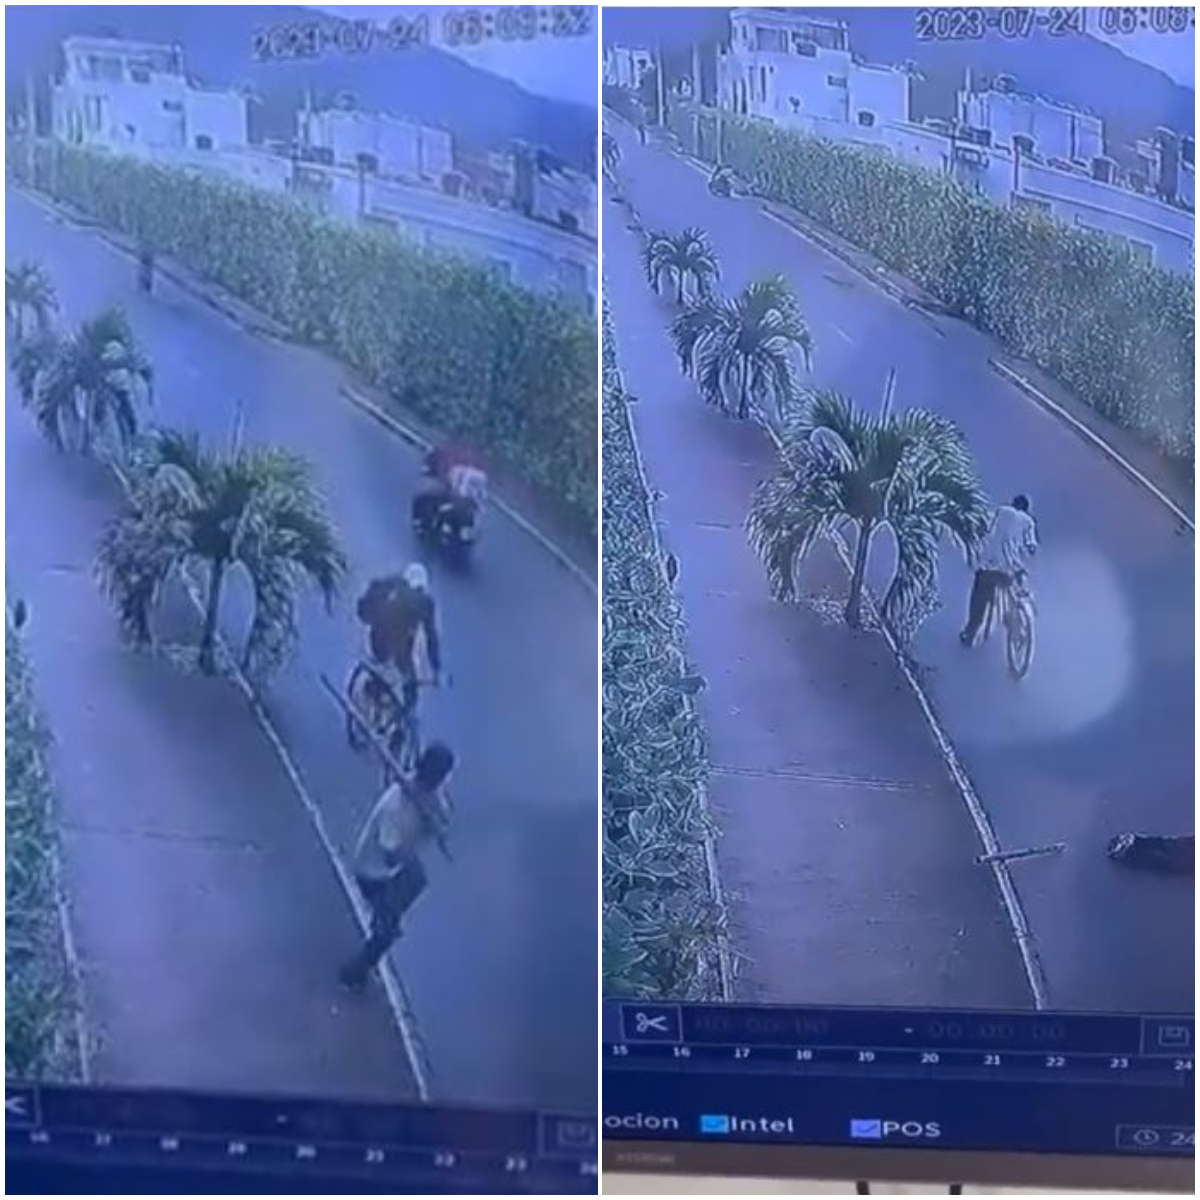 En Santander, un ladrón sorprendió a un ciclista y le pegó con un tubo de metal que terminó quitándole la vida. El delincuente huyó con bicicleta.